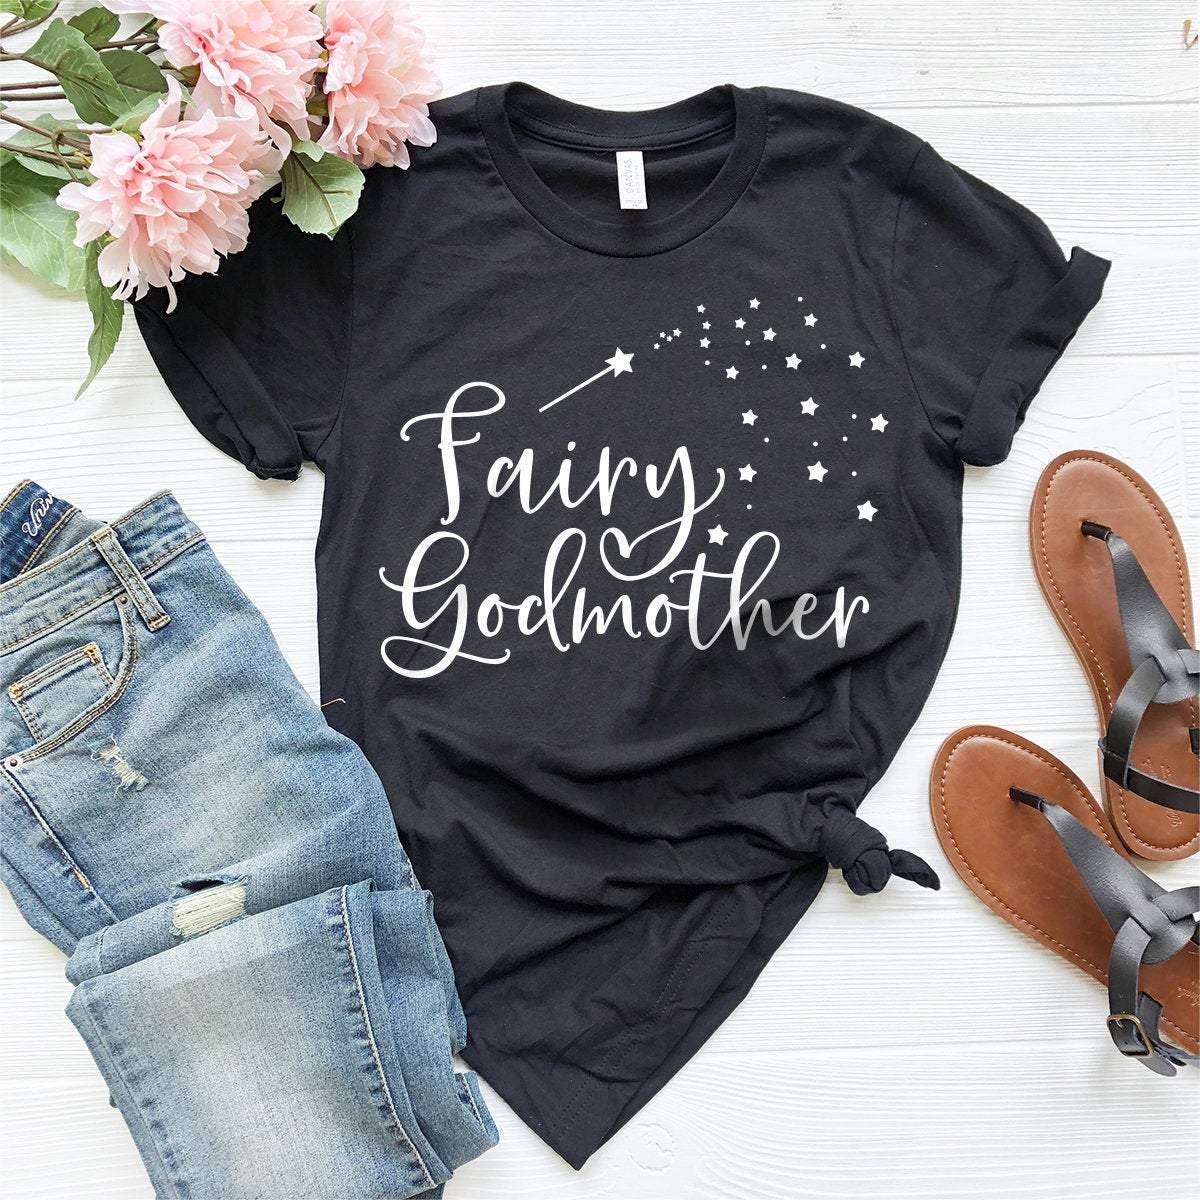 Fairy Godmother T-Shirt, Godmother Shirt, Gift For Baptism, Gift For Godmother, Godmother Tee, Trendy Godmother Tee, Godmother Gift - Fastdeliverytees.com